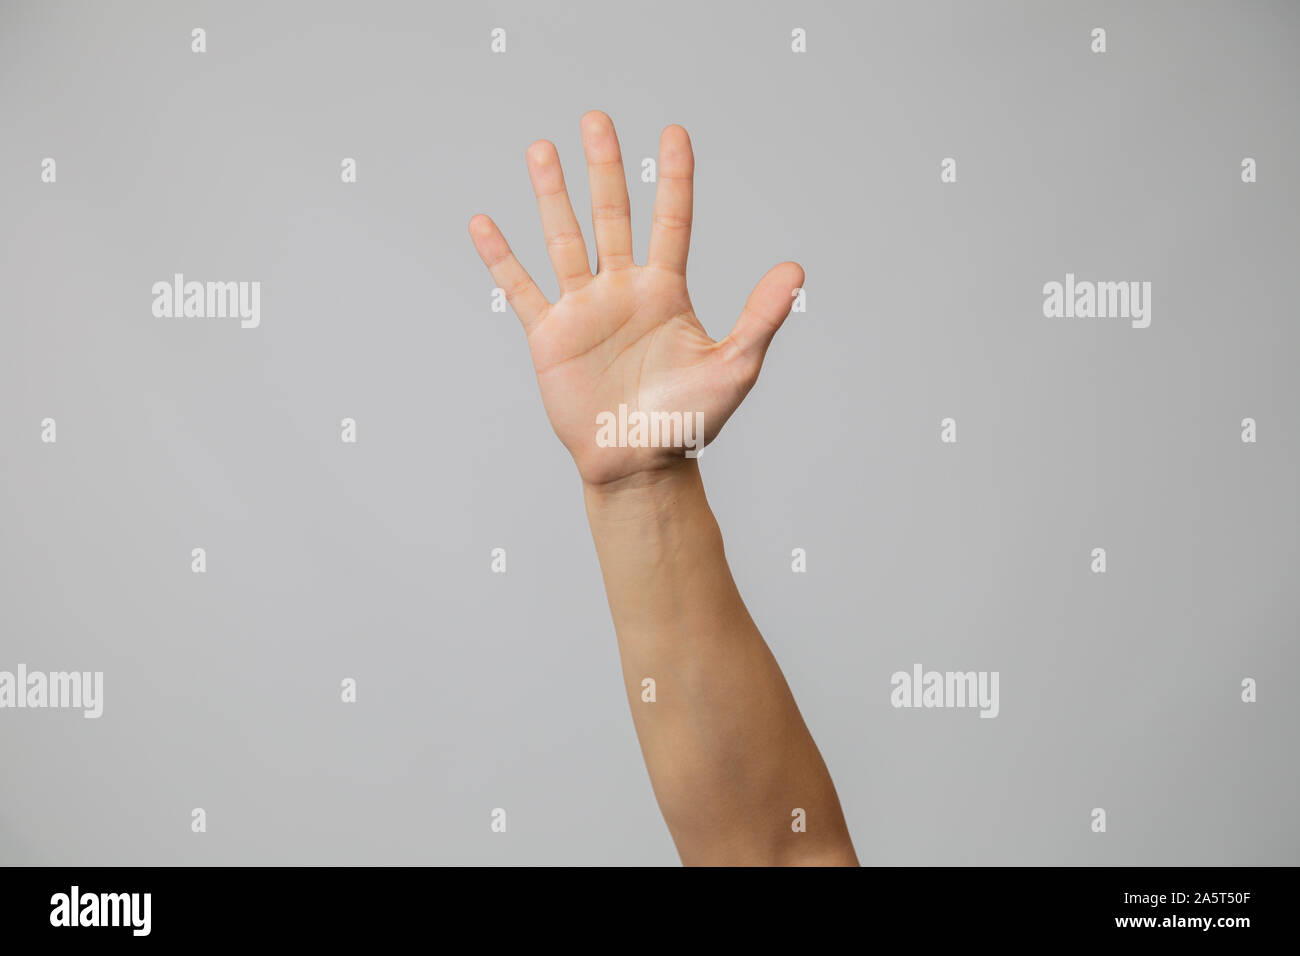 Riproduzione a mano con le dita in studio con sfondo grigio Foto Stock